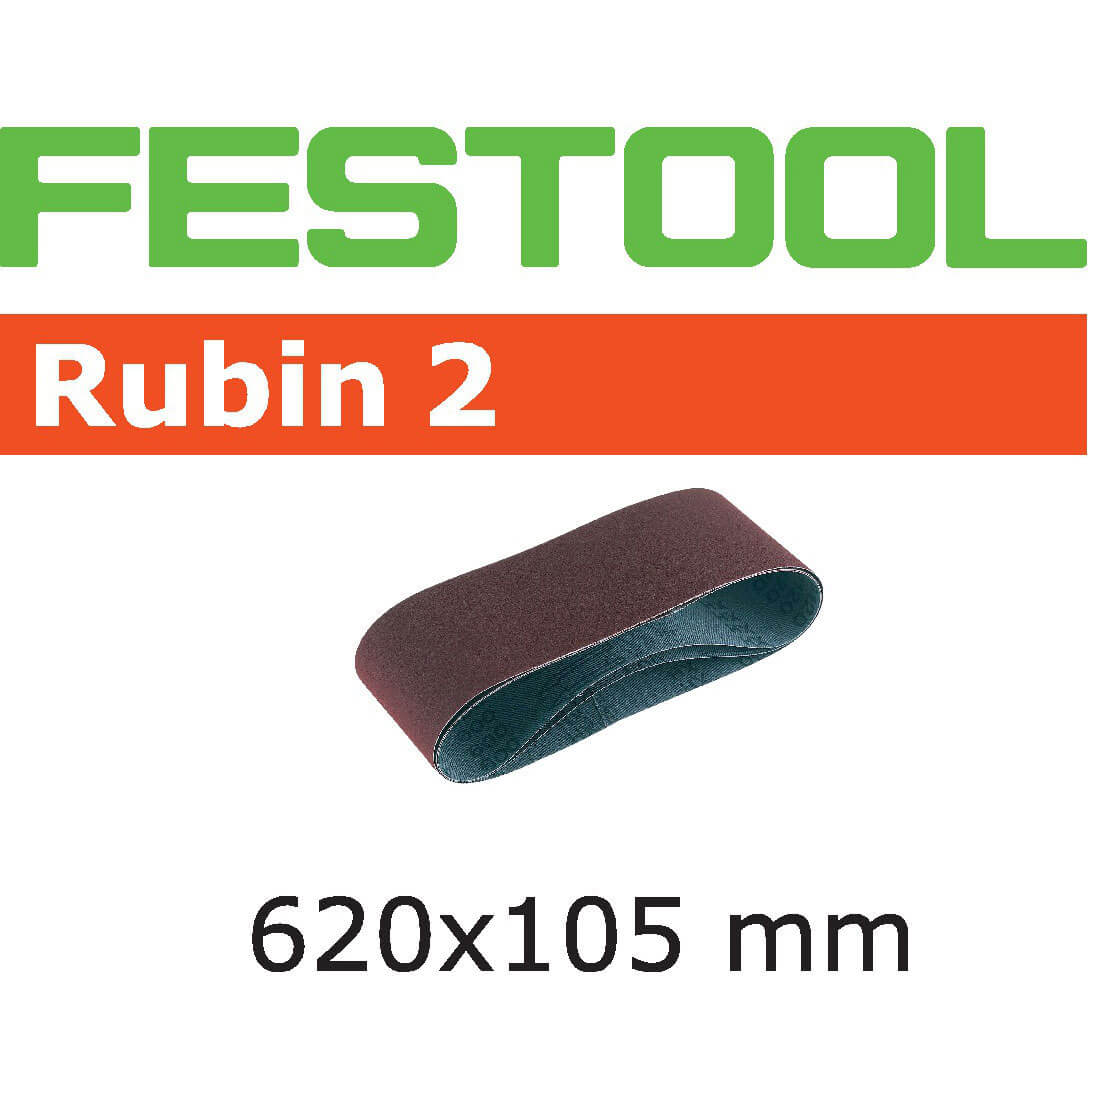 Image of Festool 105mm x 620mm Rubin 2 Abrasive Sanding Belt 105mm x 620mm 120g Pack of 10